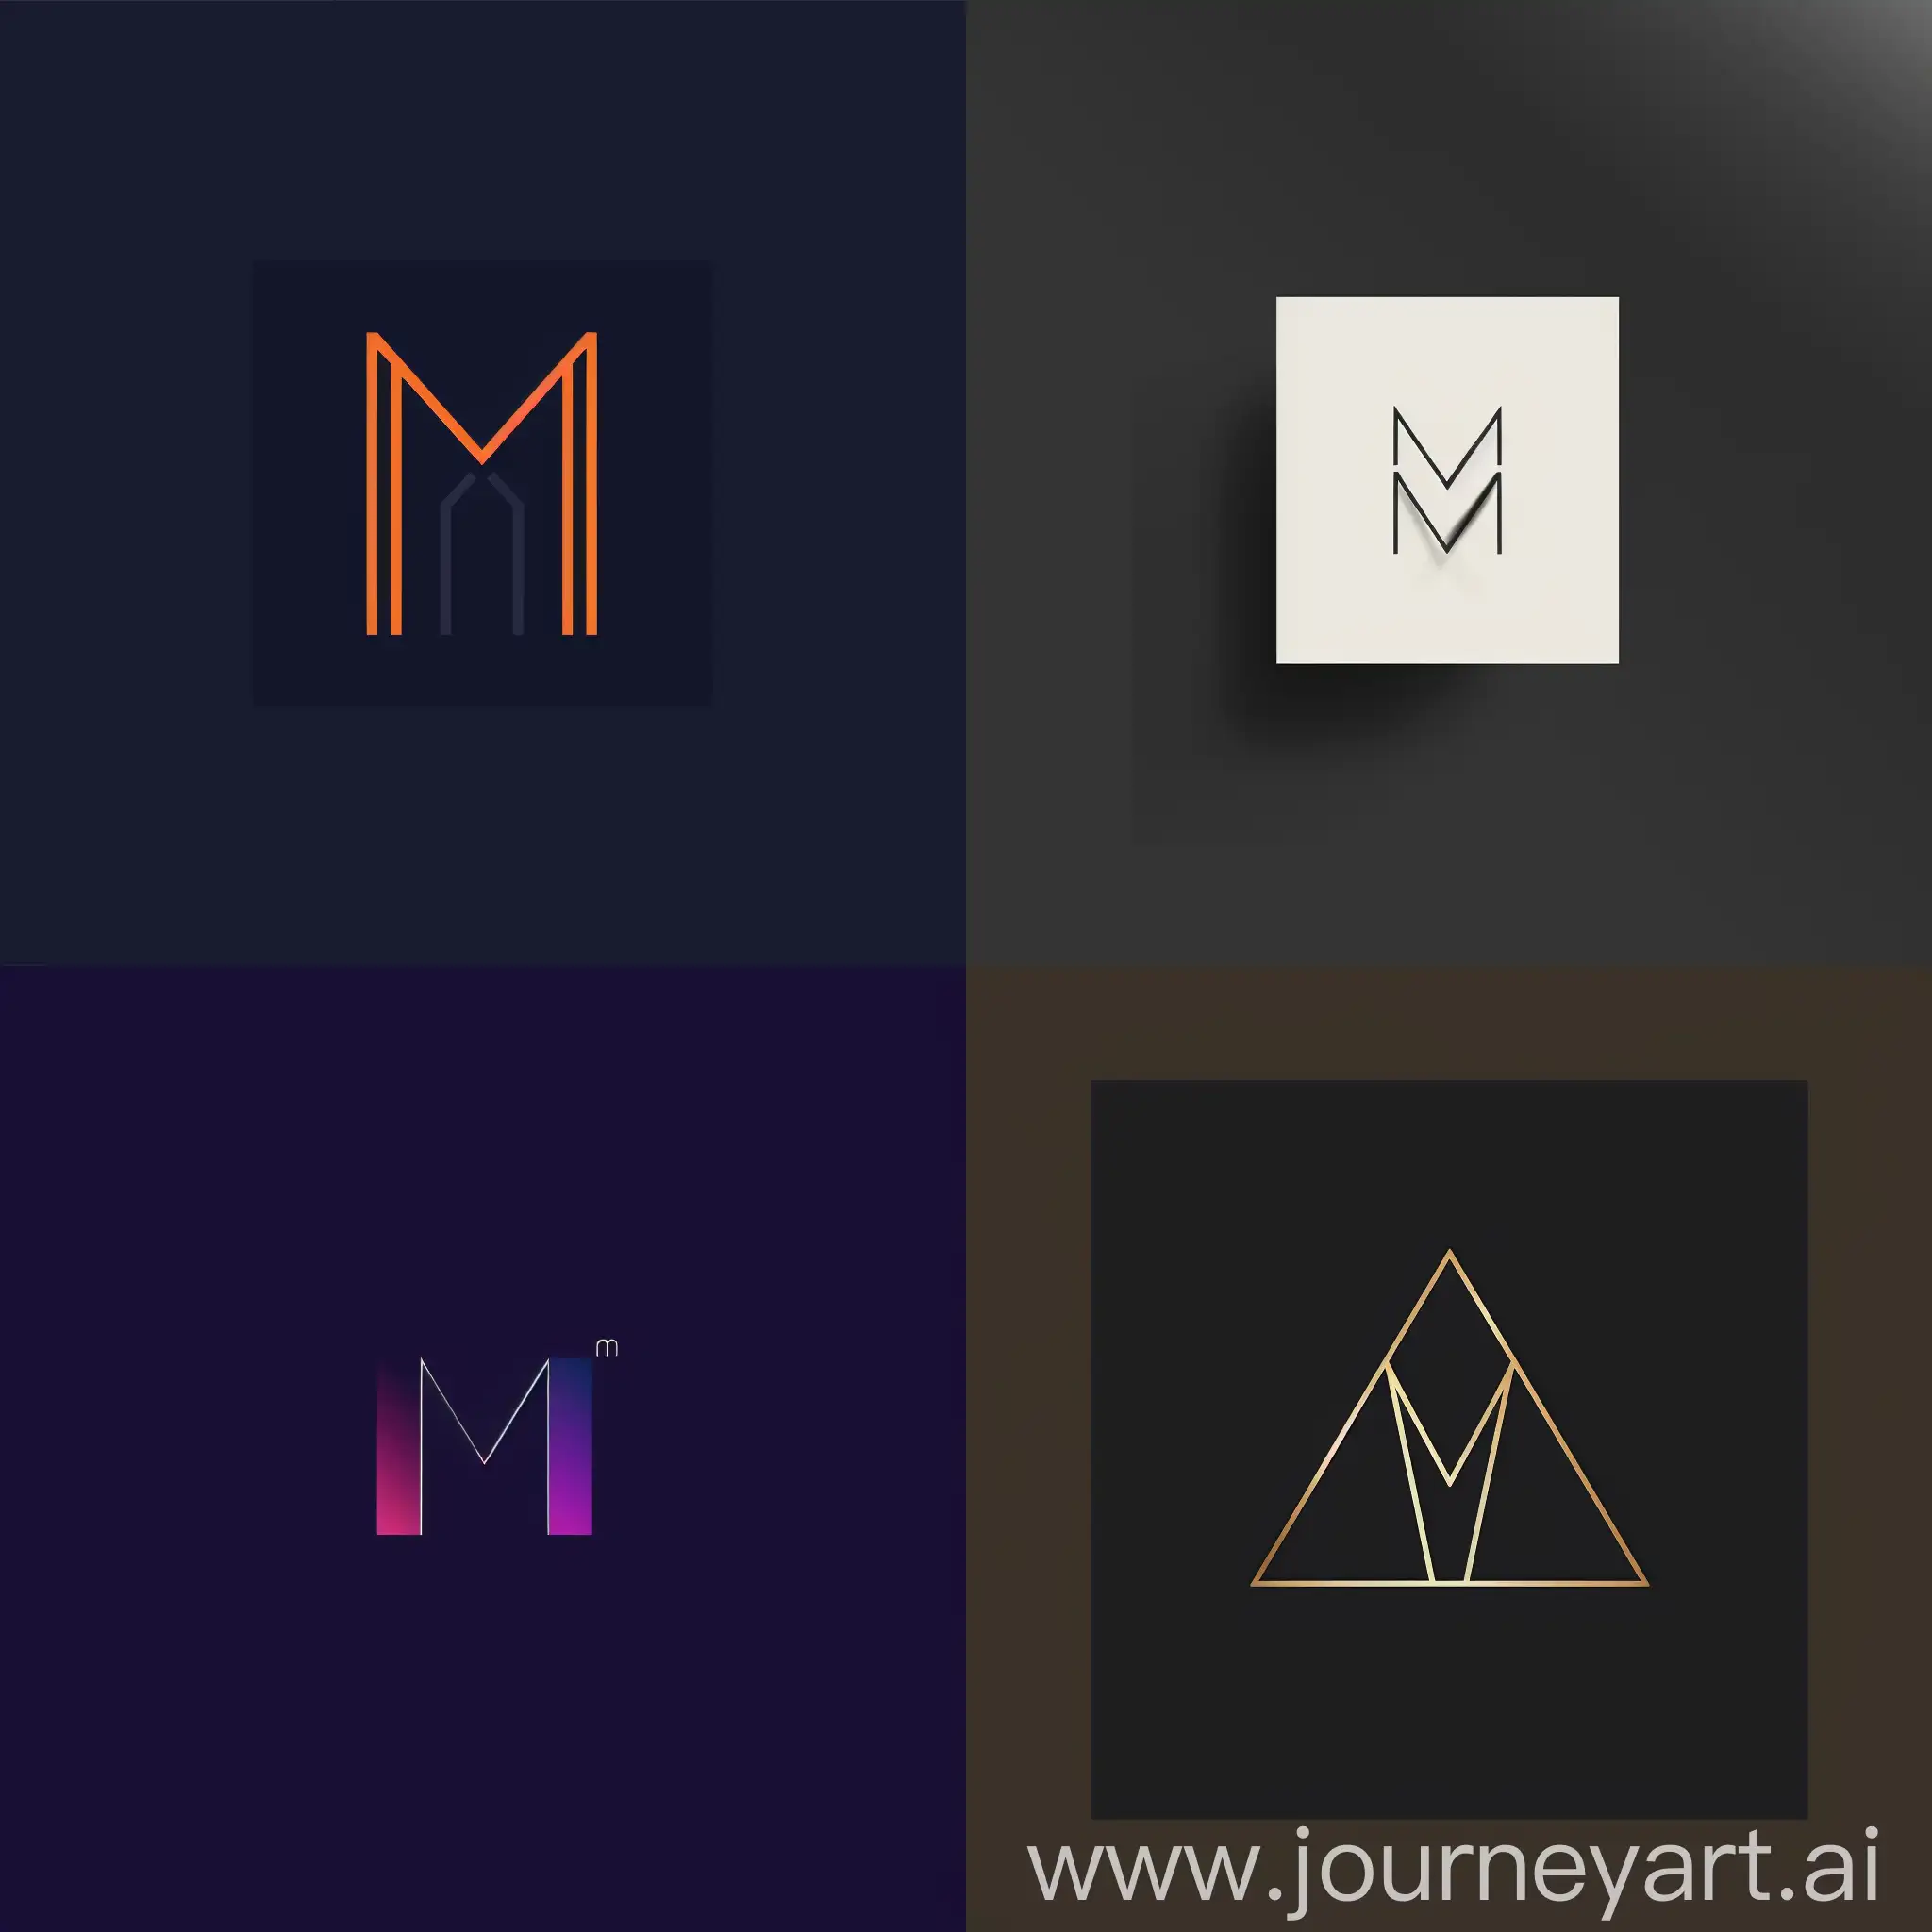 Crea un logo a dos colores en los que haya una M oculta con elementos geometricos, o minimalistas
